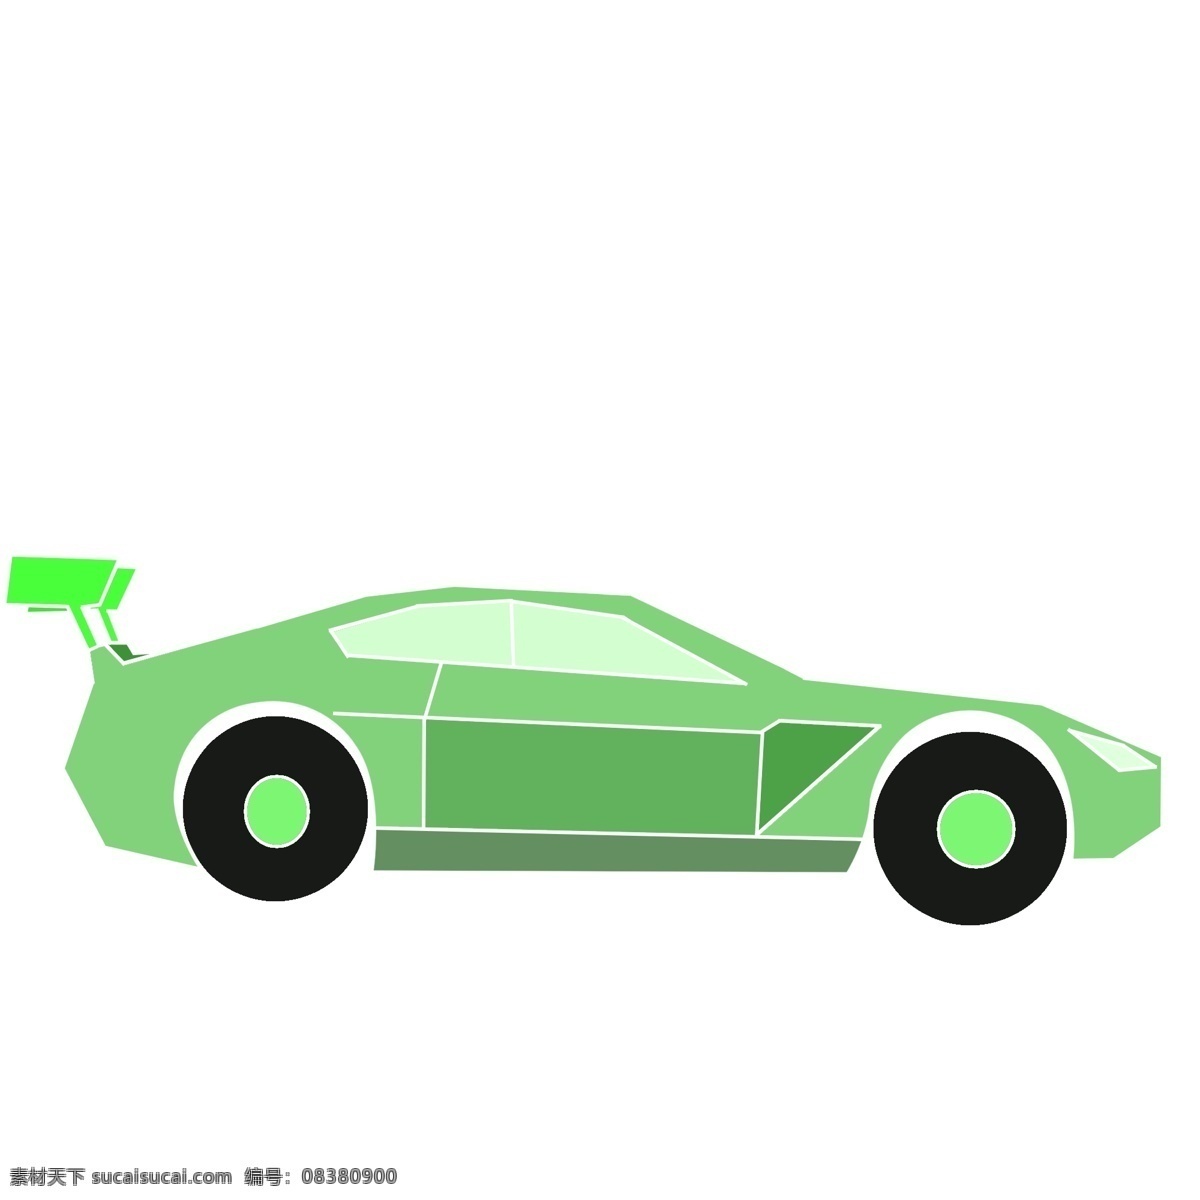 绿色卡通跑车 接通工具 绿色 汽车